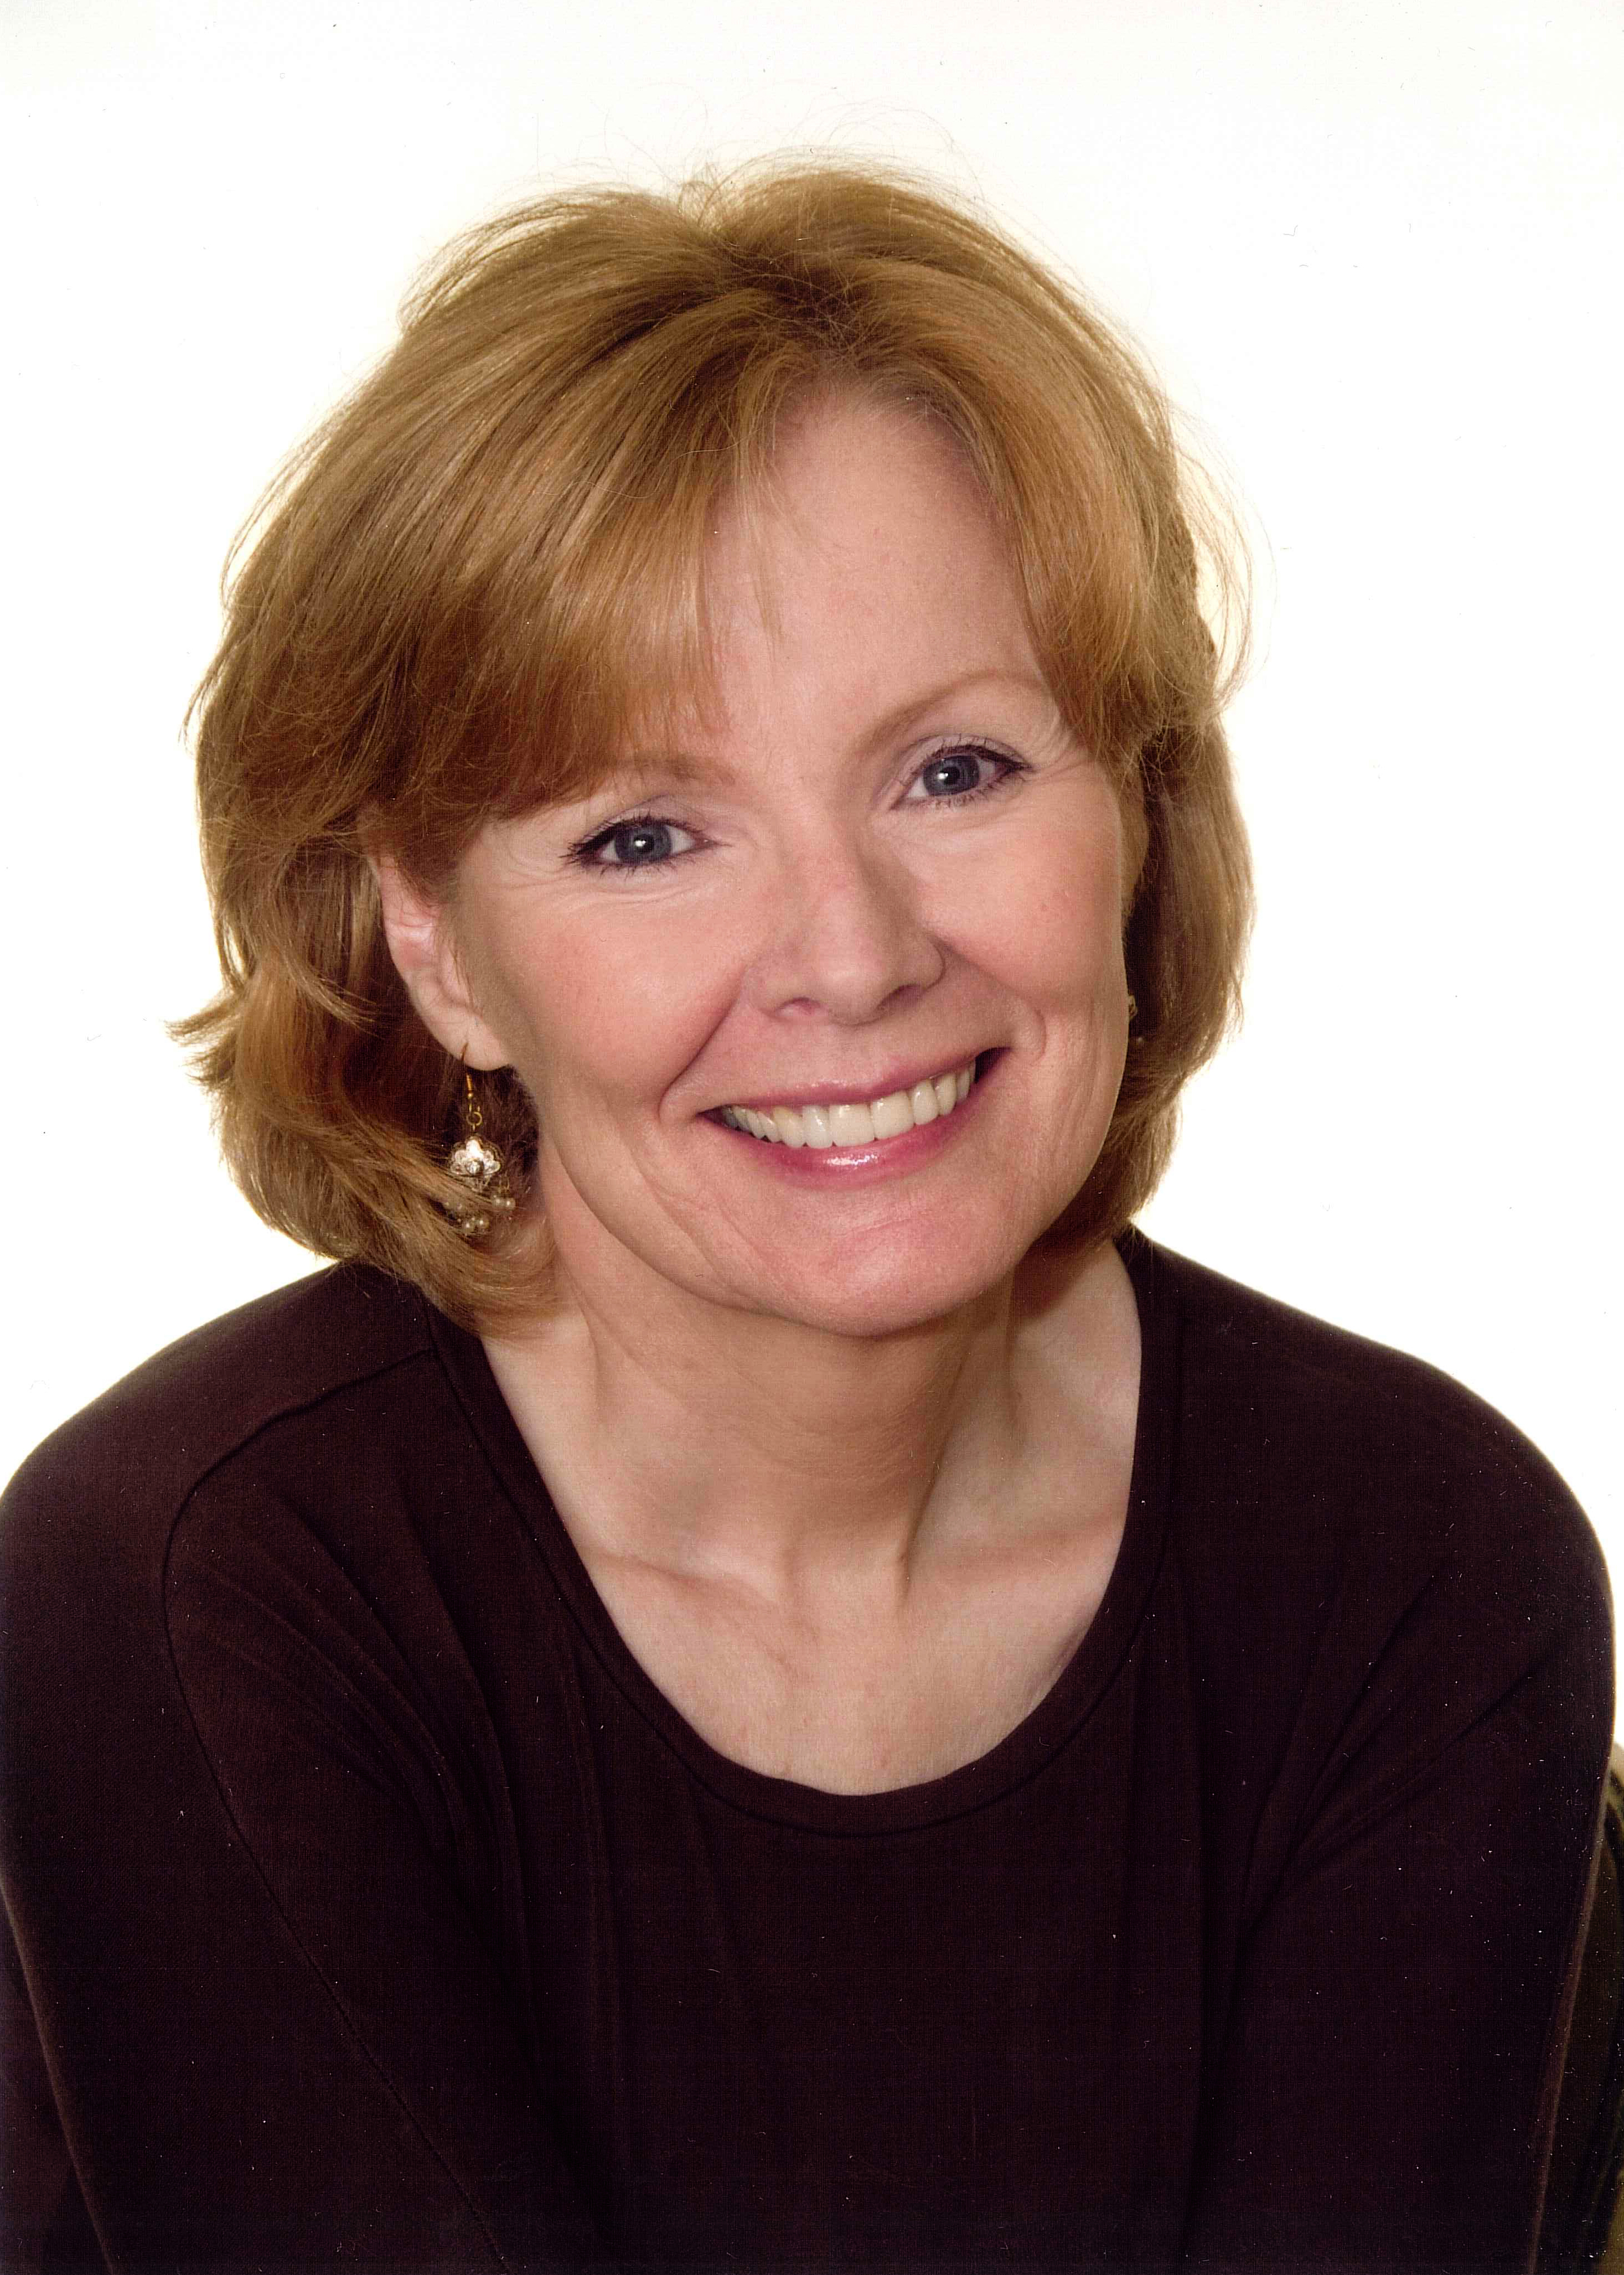 Peggy Noonan